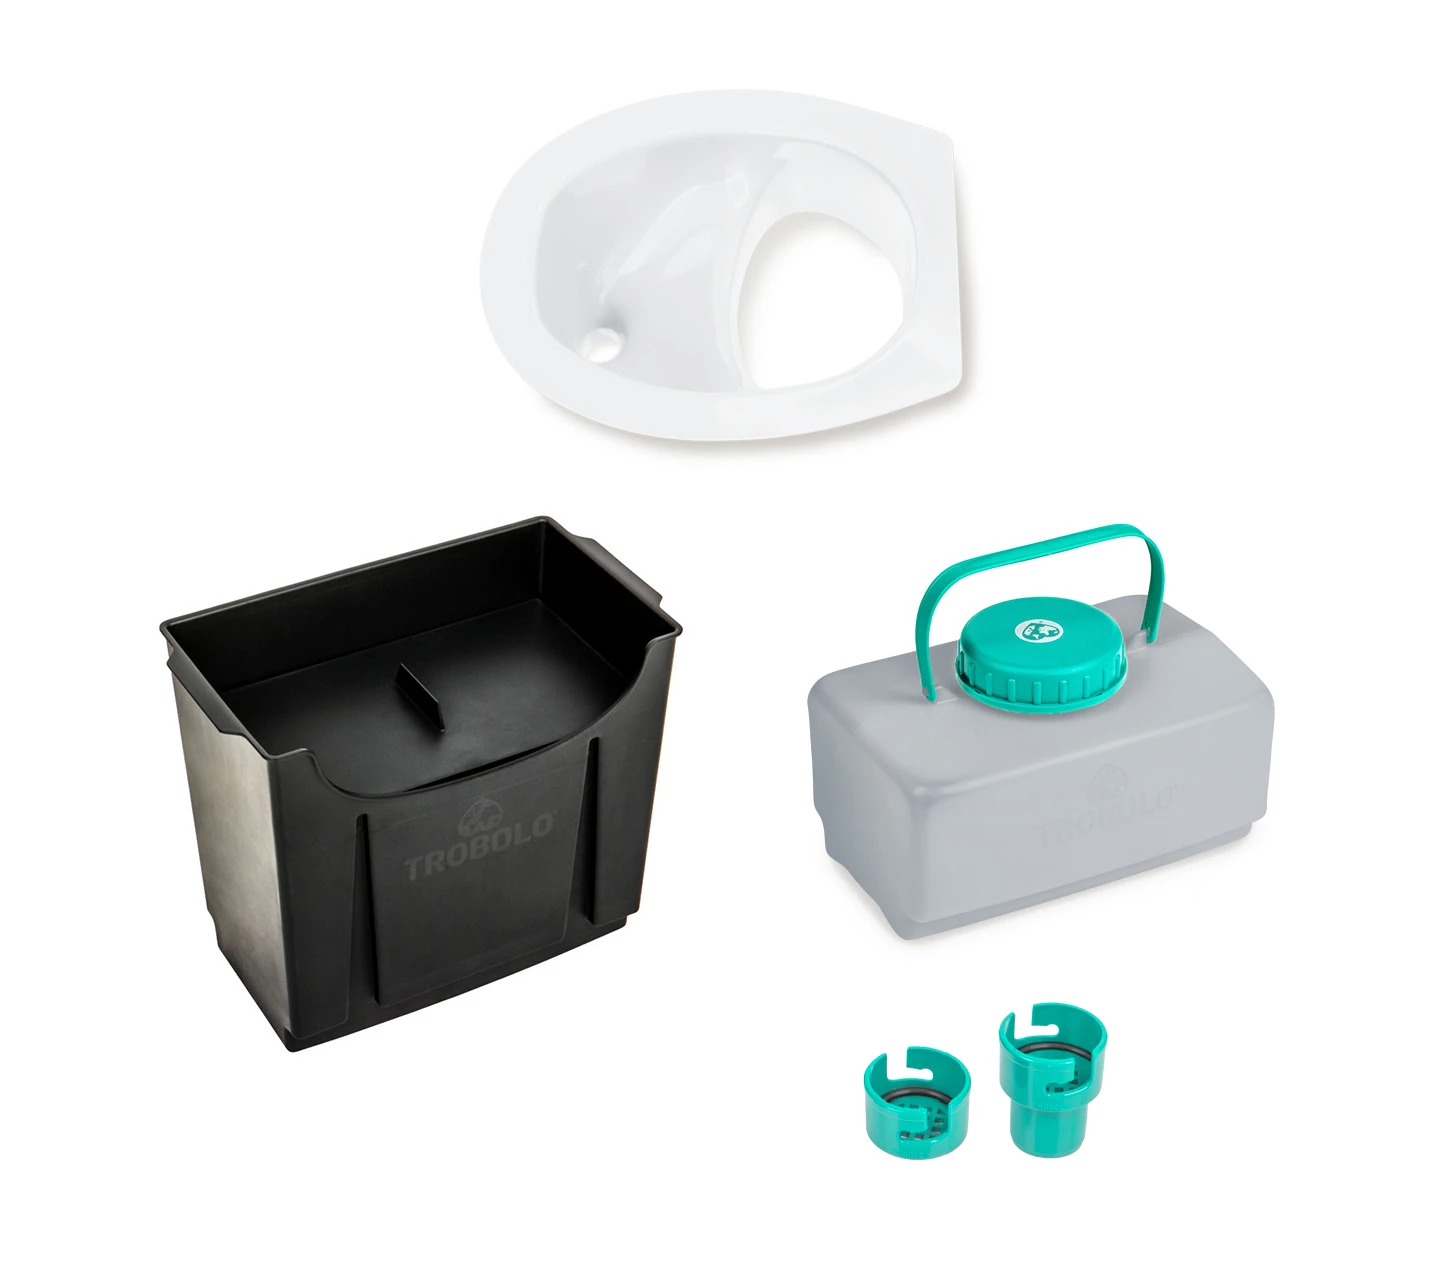 Toilettes sèches accessibles et mobiles mélèze ou douglas, kit complet